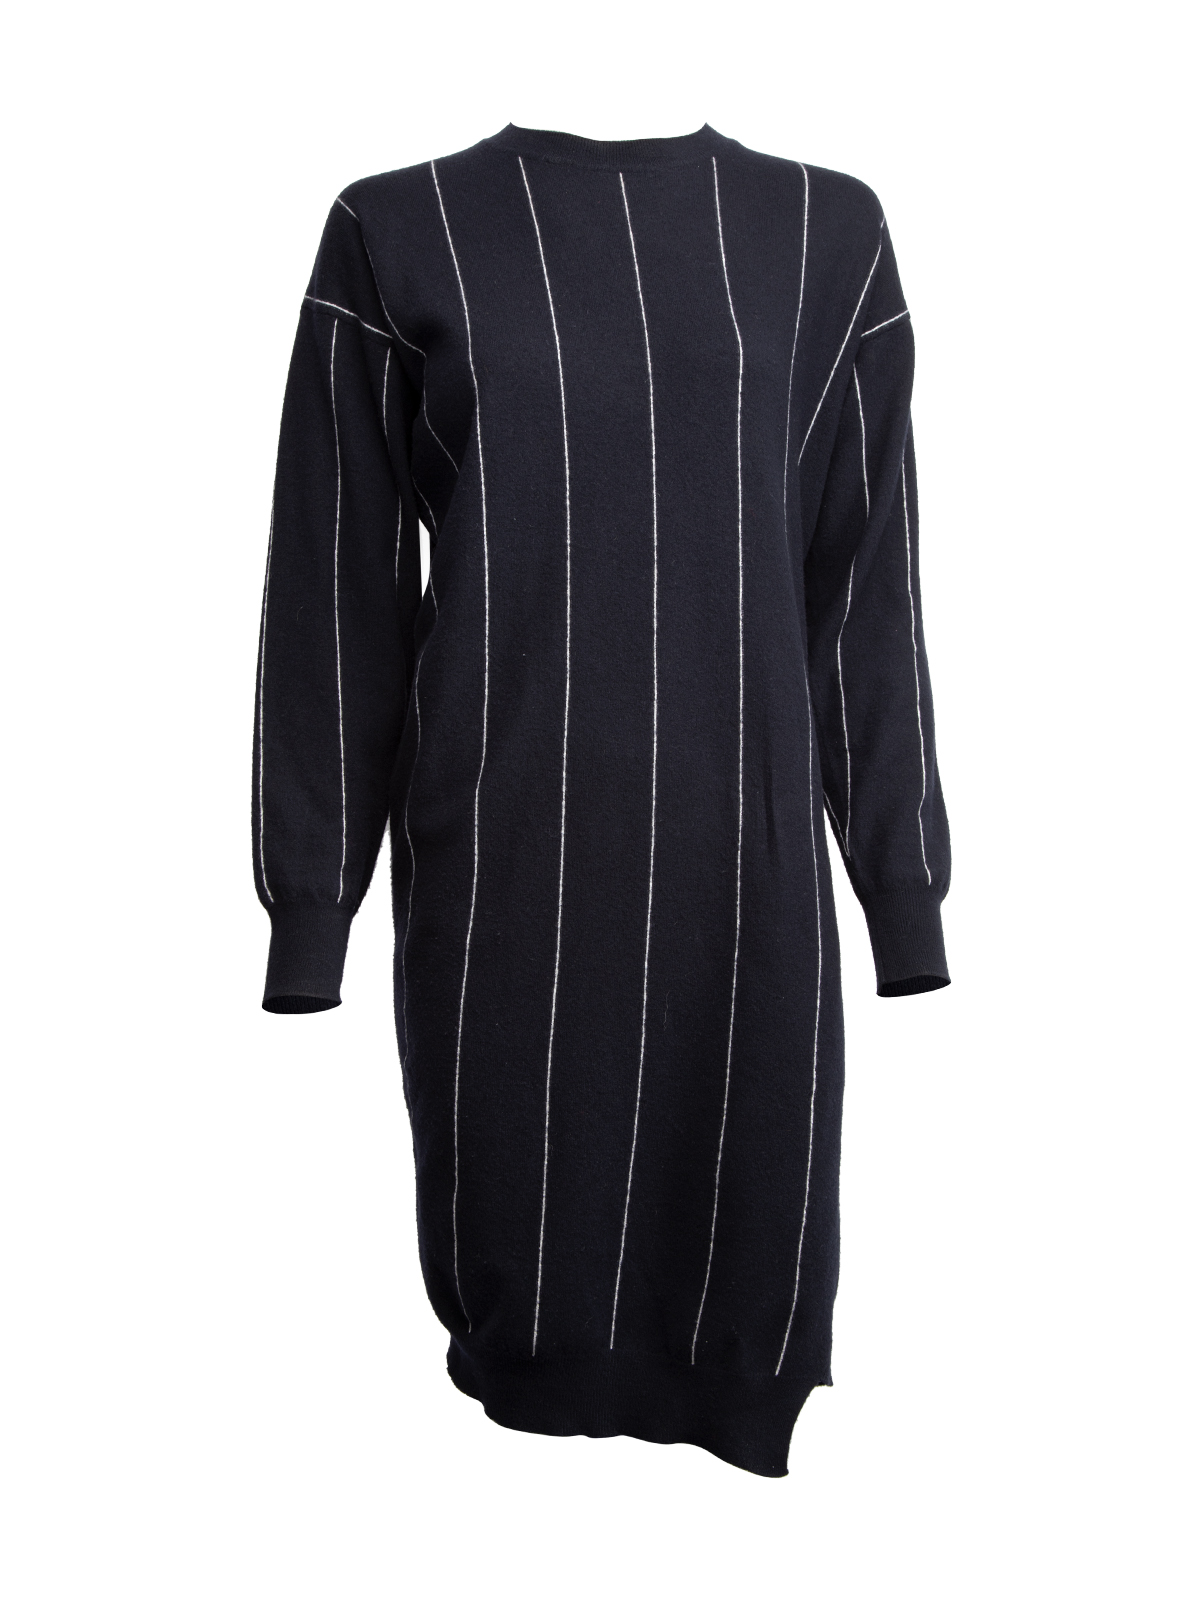 Stella McCartney Wool Long Sleeve Dress